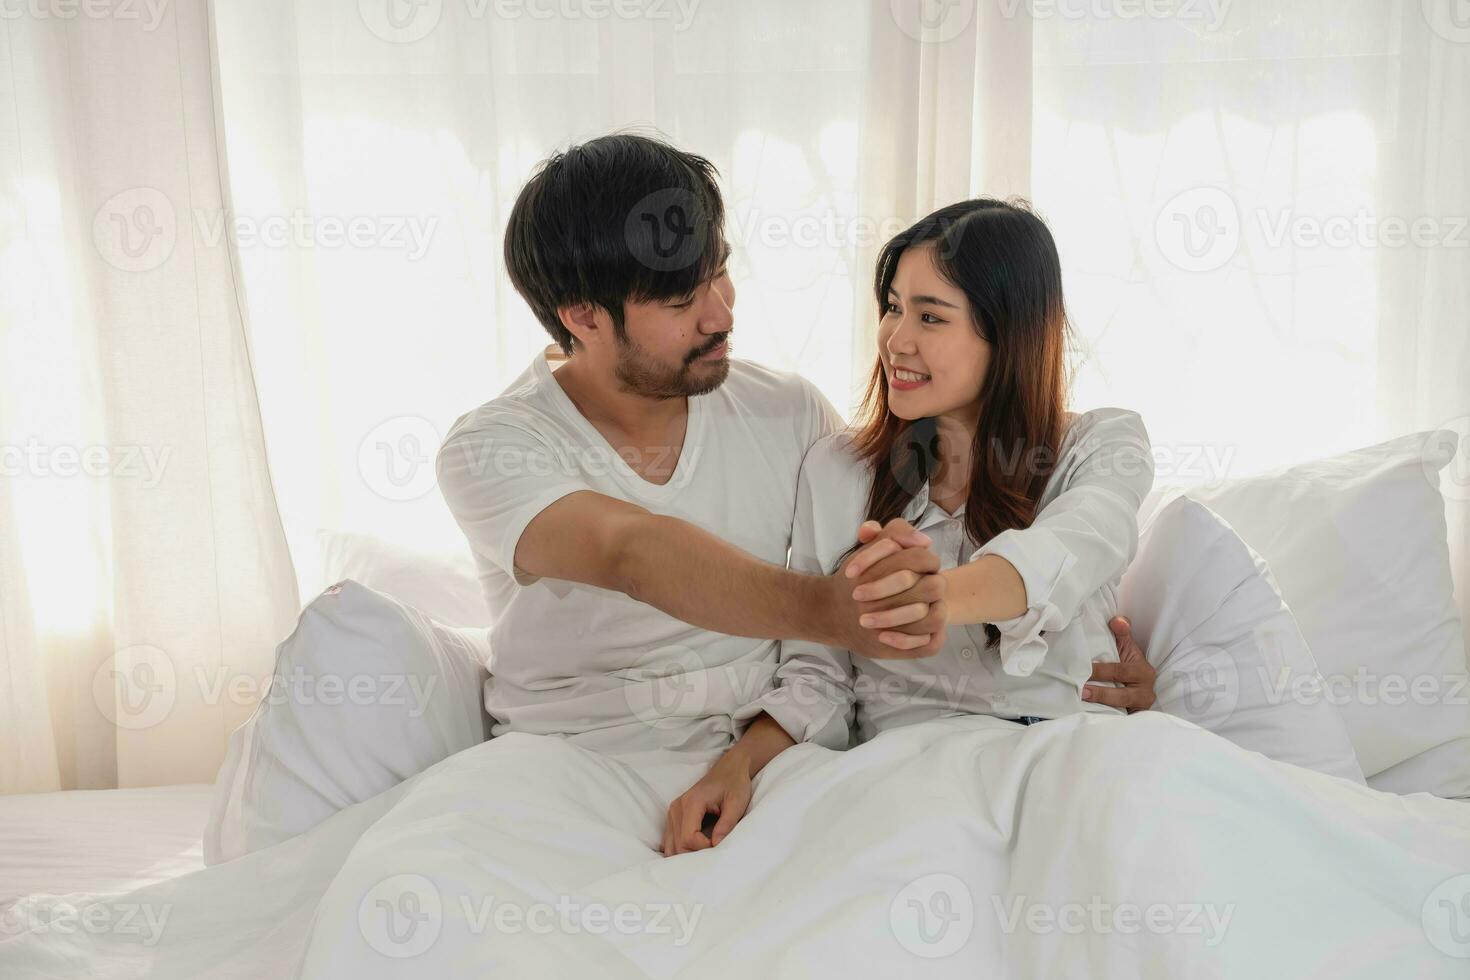 gelukkig jong Aziatisch paar omarmen, plagen, spelen vrolijk in bed Bij huis, romantisch tijd naar verbeteren familie binding. familie concept. foto